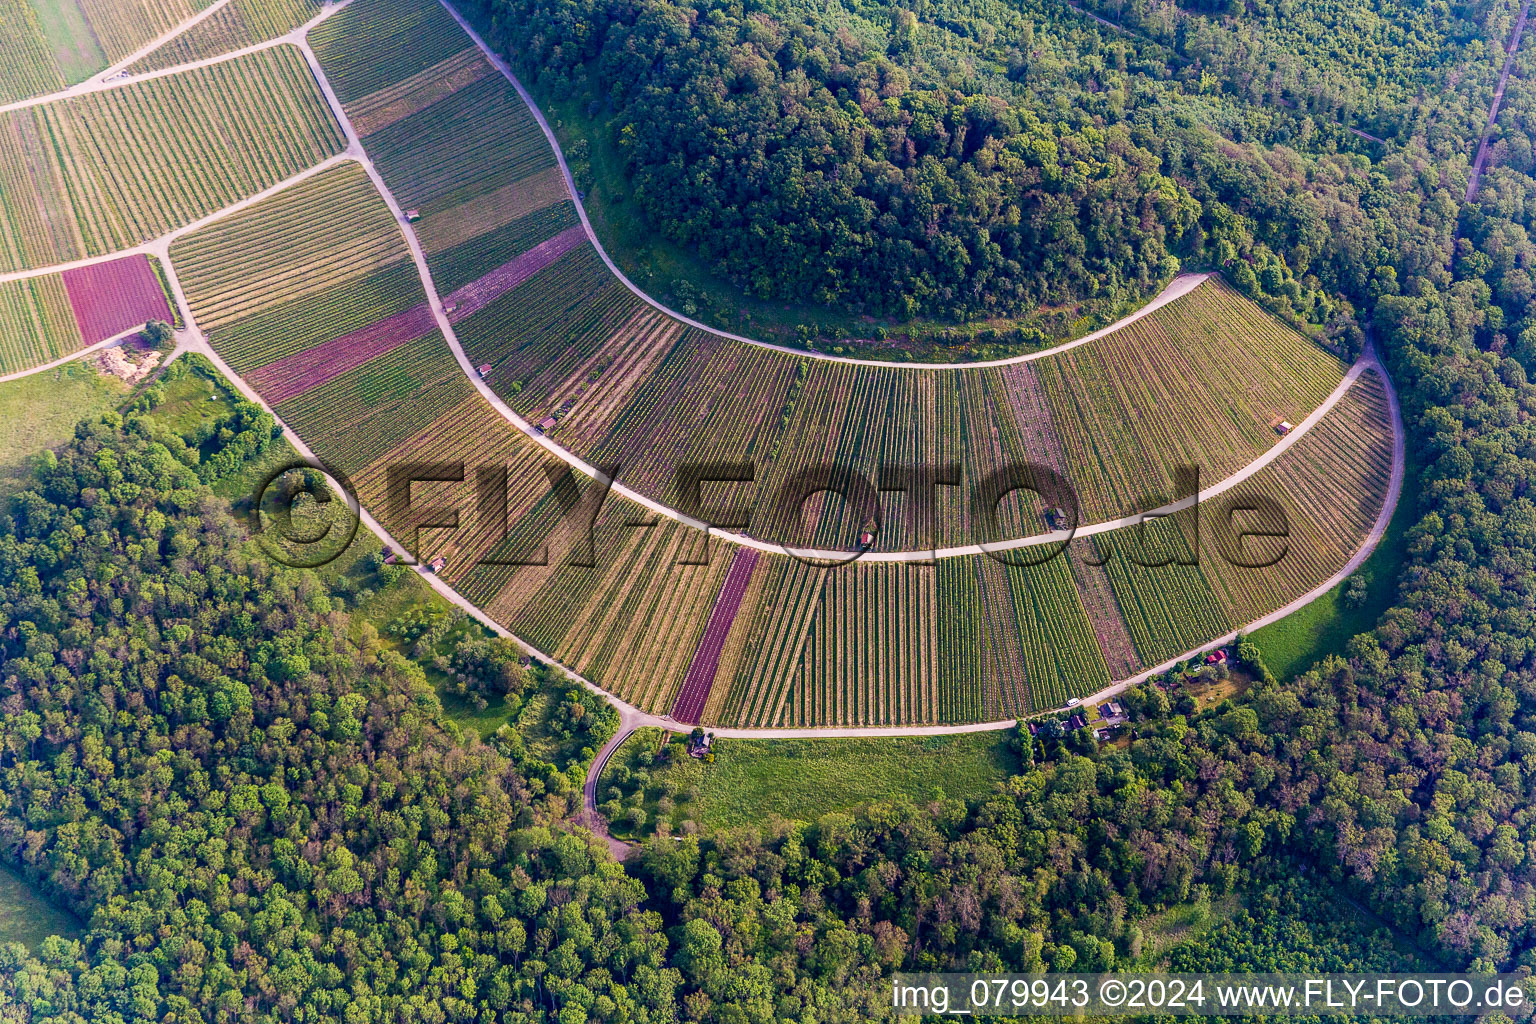 Photographie aérienne de Paysage viticole "Wilder Frit à Sternenfels dans le département Bade-Wurtemberg, Allemagne